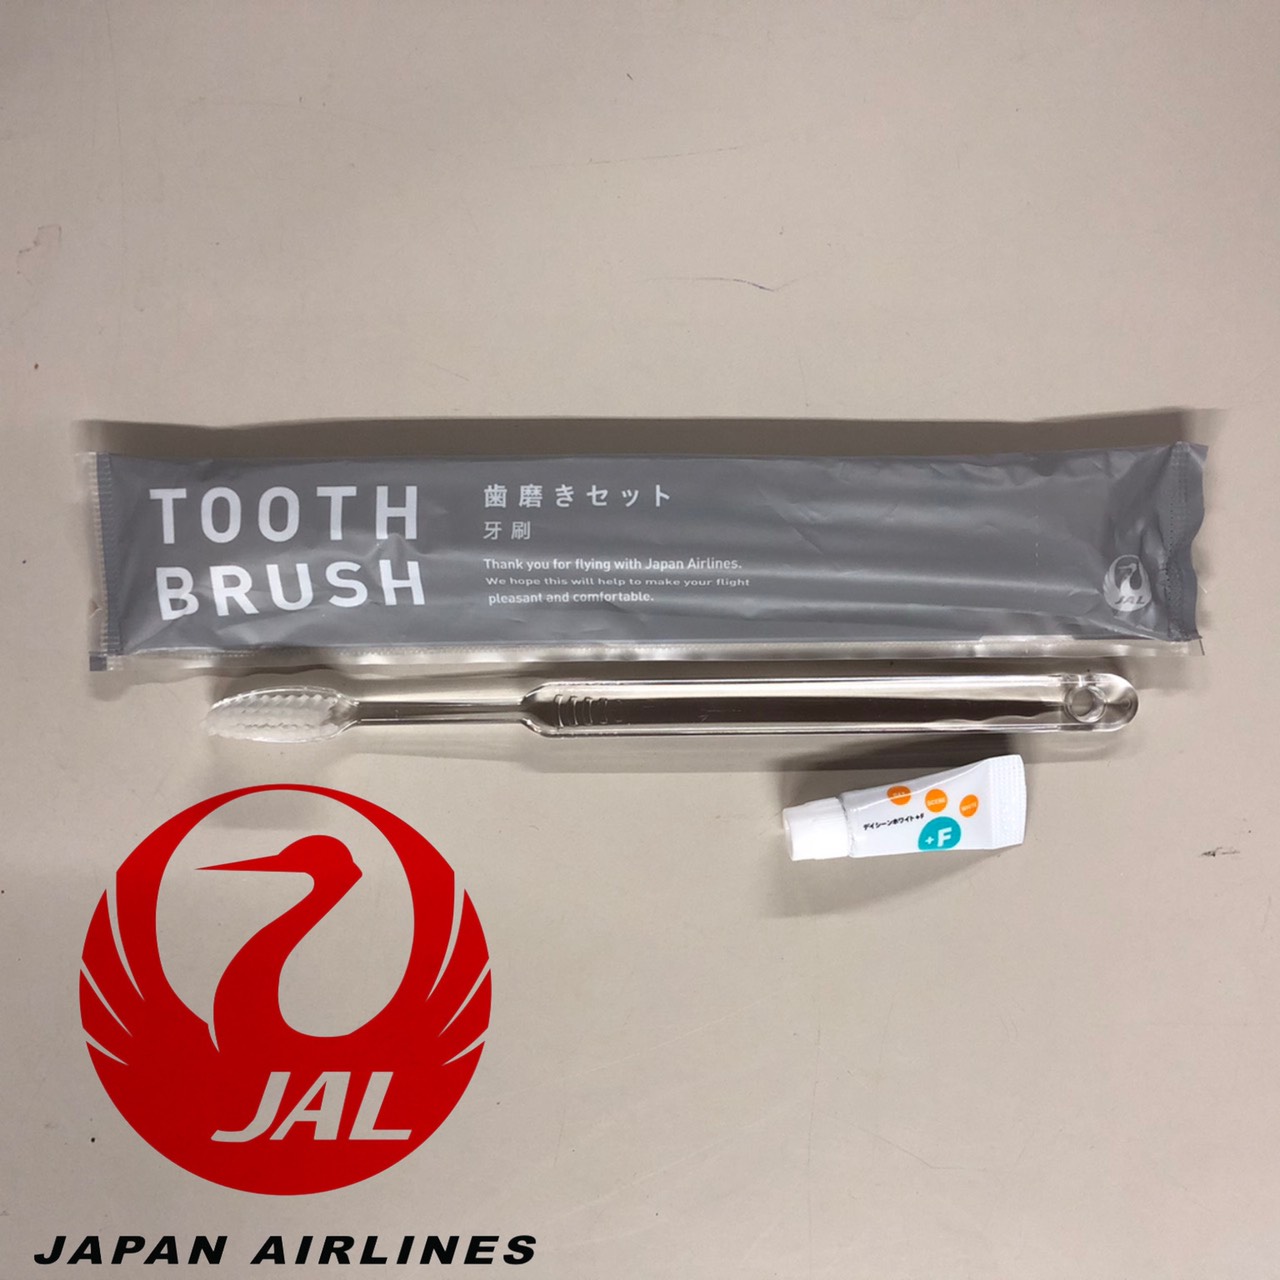 ชุดแปรงสีฟันเกรด A+ สำหรับโรงแรม พกพา(แถมยาสีฟัน)ของสายการบิน JAPAN AIRLINES